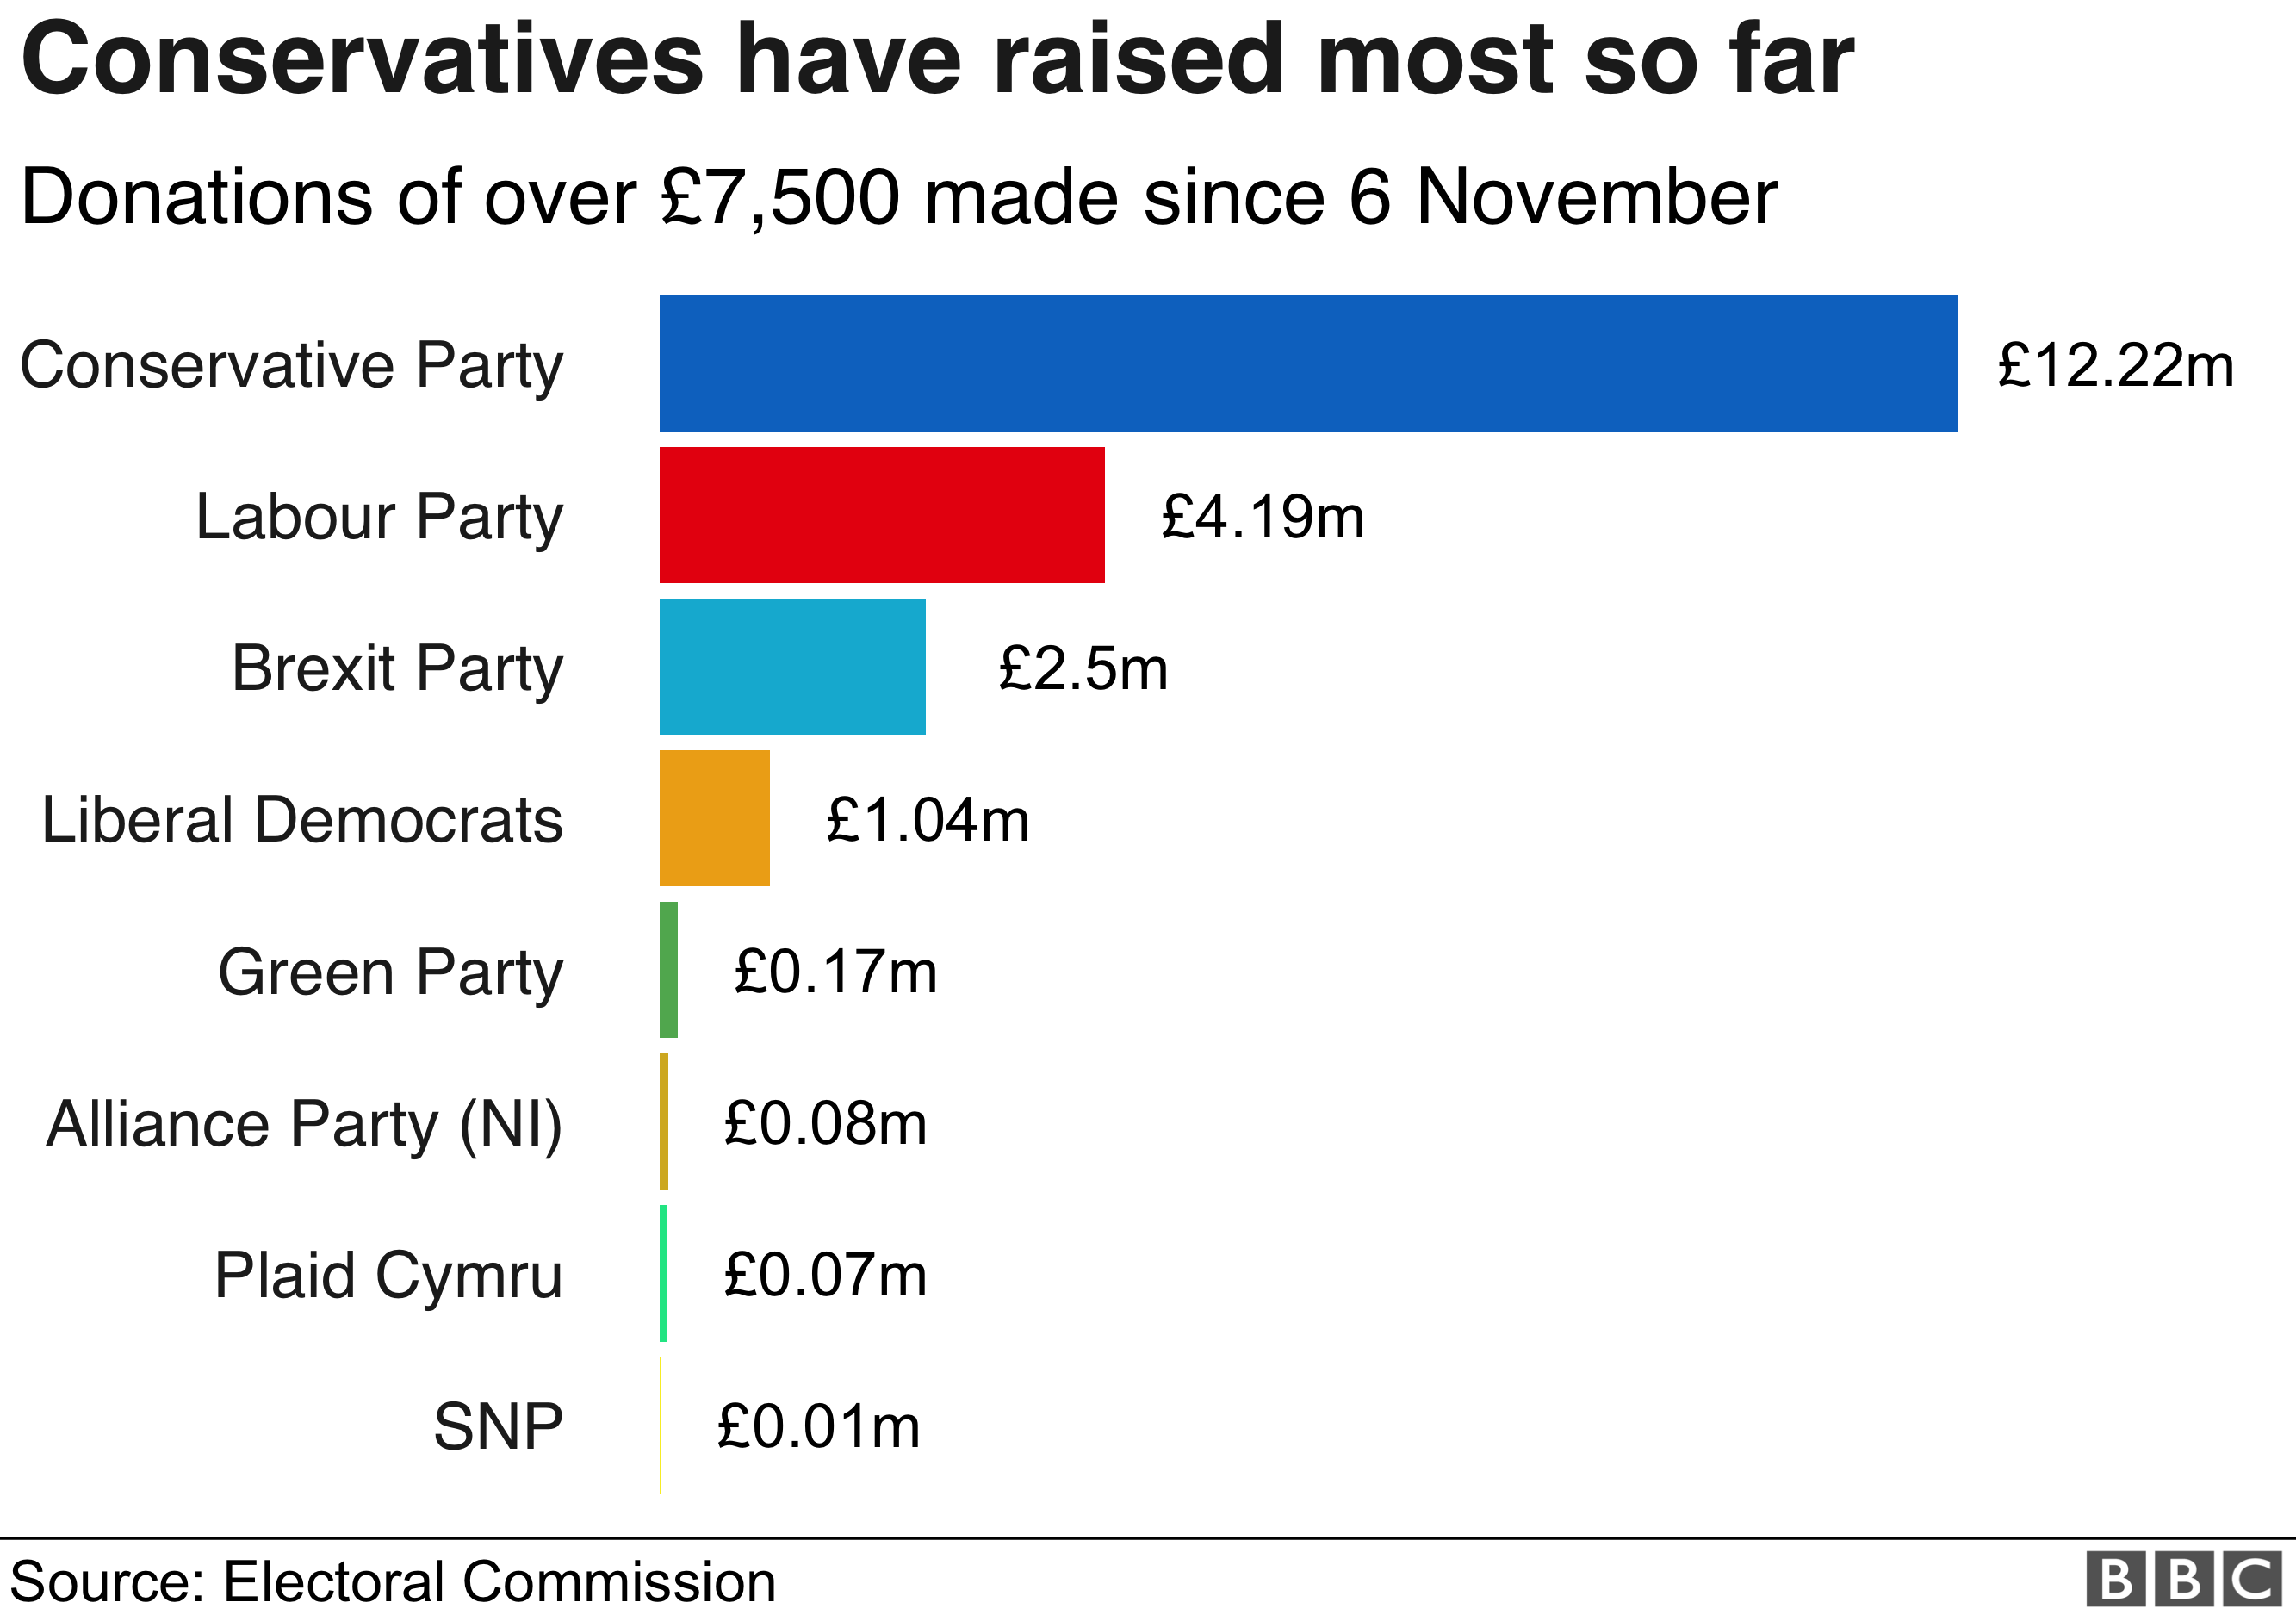 Пожертвования основным партиям - первое место консерваторов с 12 фунтами стерлингов.22м